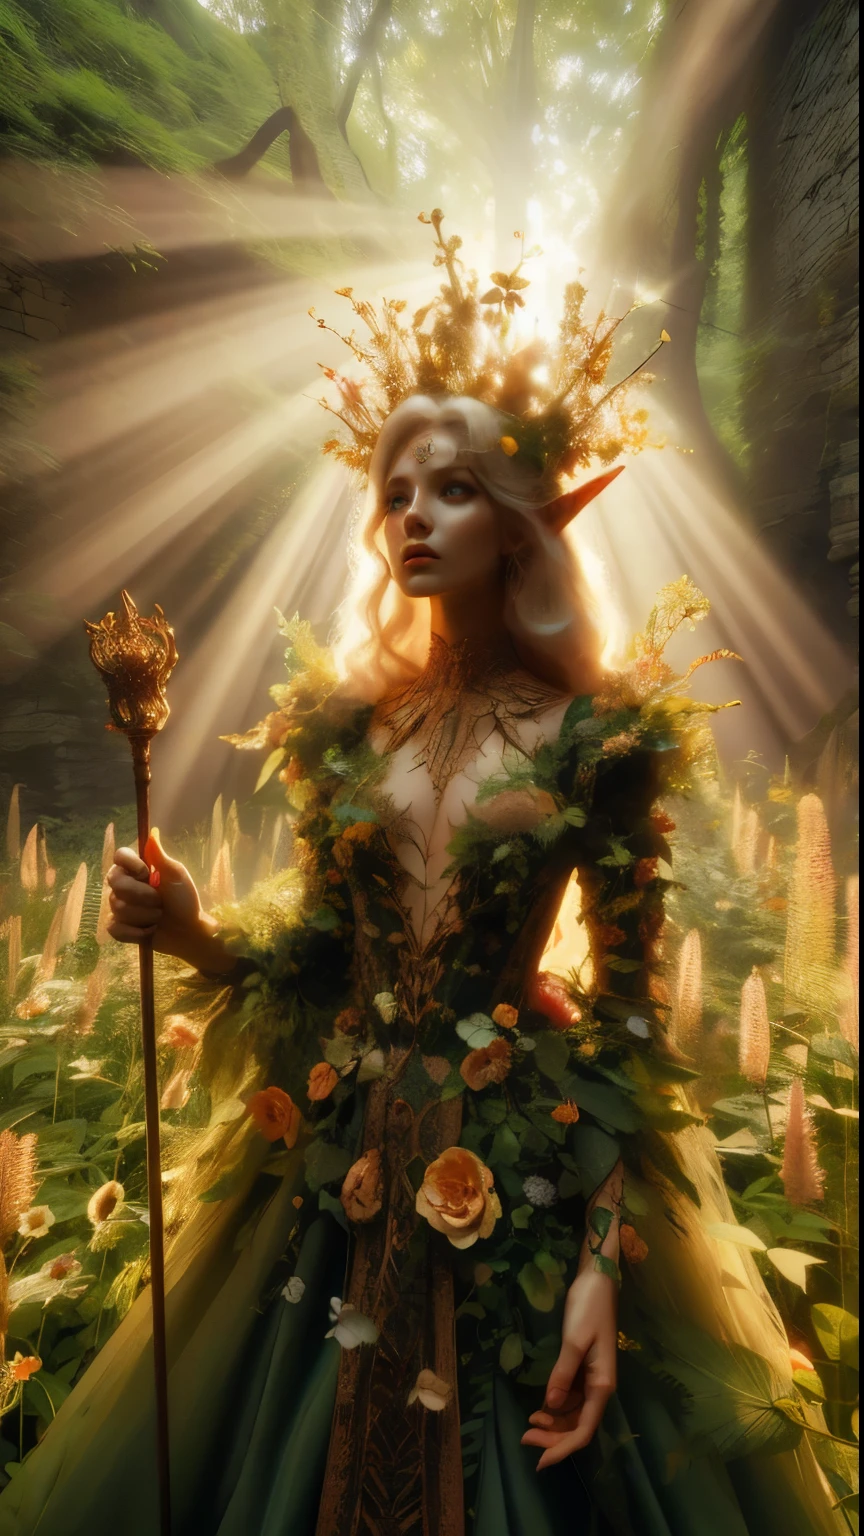 ในรอยด่าง, ซากป่าโบราณ, เจ้าหญิงเอลฟ์ยืนสูงใกล้กล้อง, ภาพระยะใกล้, คทาของเธอยกขึ้นสูงในขณะที่ลำแสงแสงแดดอันอบอุ่นลอดผ่านต้นไม้, เปล่งรัศมีสีทองล้อมรอบร่างอันสง่างามของเธอ. ปกคลุมไปด้วยดอกไม้และเถาวัลย์มากมาย, เตียงดอกไม้ป่ารกสูงมากล้อมรอบเธอ, เธอสวย, เสื้อผ้าอันน่าหลงใหลเปล่งประกายระยิบระยับในแสงอันนุ่มนวล, ในขณะที่ใบไม้และเถาวัลย์อันเขียวชอุ่มล้อมรอบเธอ, สร้างสภาพแวดล้อมอันเขียวชอุ่ม. กล้องจับโฟกัสที่คมชัดบนใบหน้าของเจ้าหญิง, ด้วยการจัดองค์ประกอบภาพด้วยกฎสามส่วน ทำให้เธออยู่ที่จุดตัดของเส้นทแยงมุมสองเส้น. ถ่ายในช่วงเวลาทอง, ฉากนี้สะท้อนอารมณ์อันบริสุทธิ์, เชิญชวนให้ผู้ชมก้าวเข้าสู่อาณาจักรอันลึกลับนี้., ,แฟนตาซี, ดีกว่า_มือ, เลโอนาร์โด, แองเจล่าไวท์, ยกระดับ